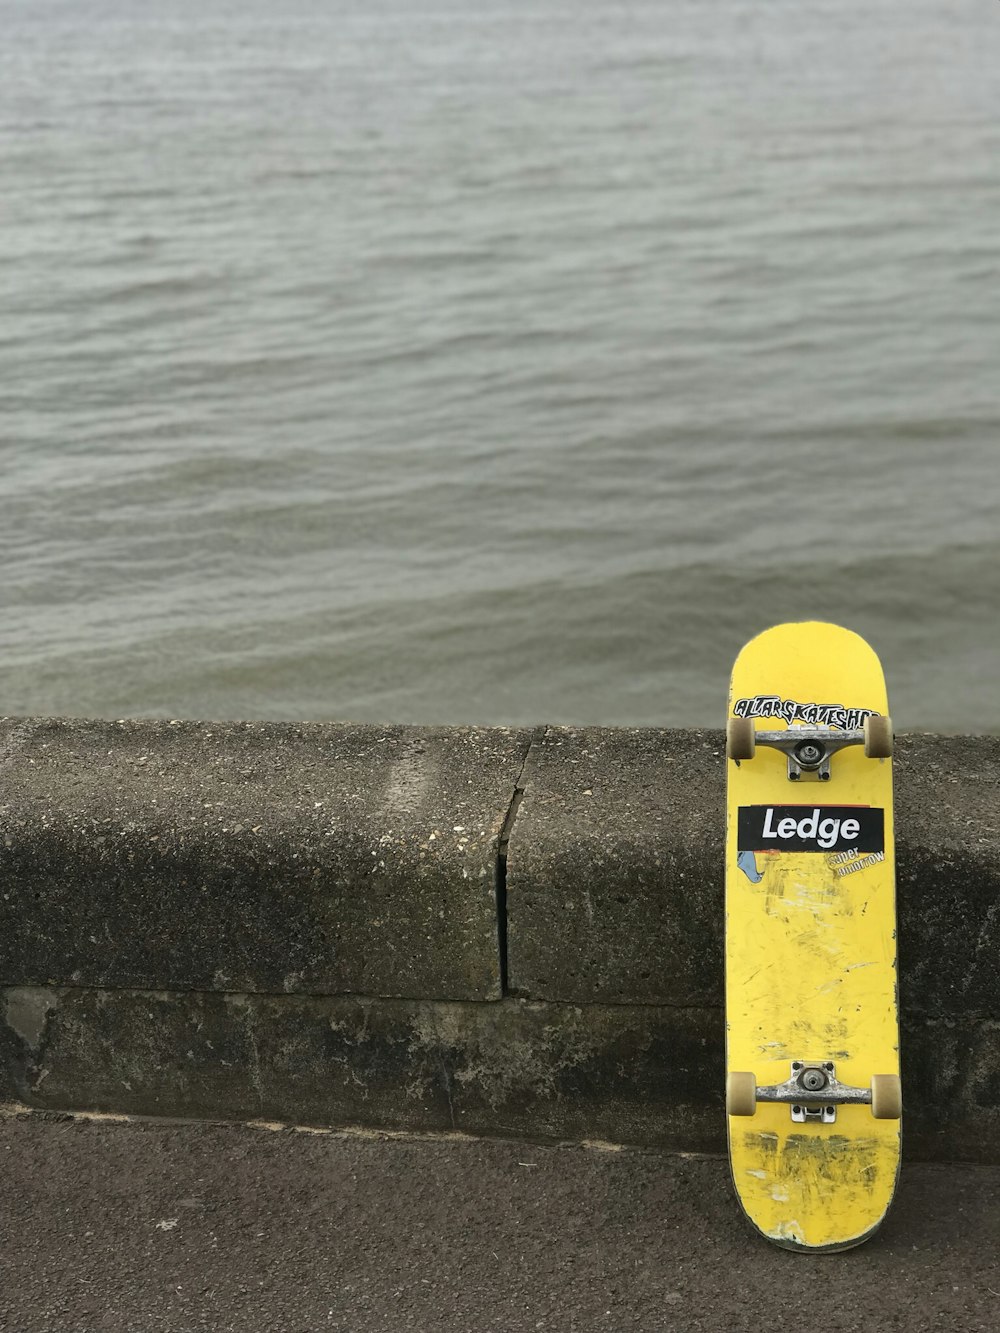 Planche à roulettes Ledge jaune près d’un plan d’eau